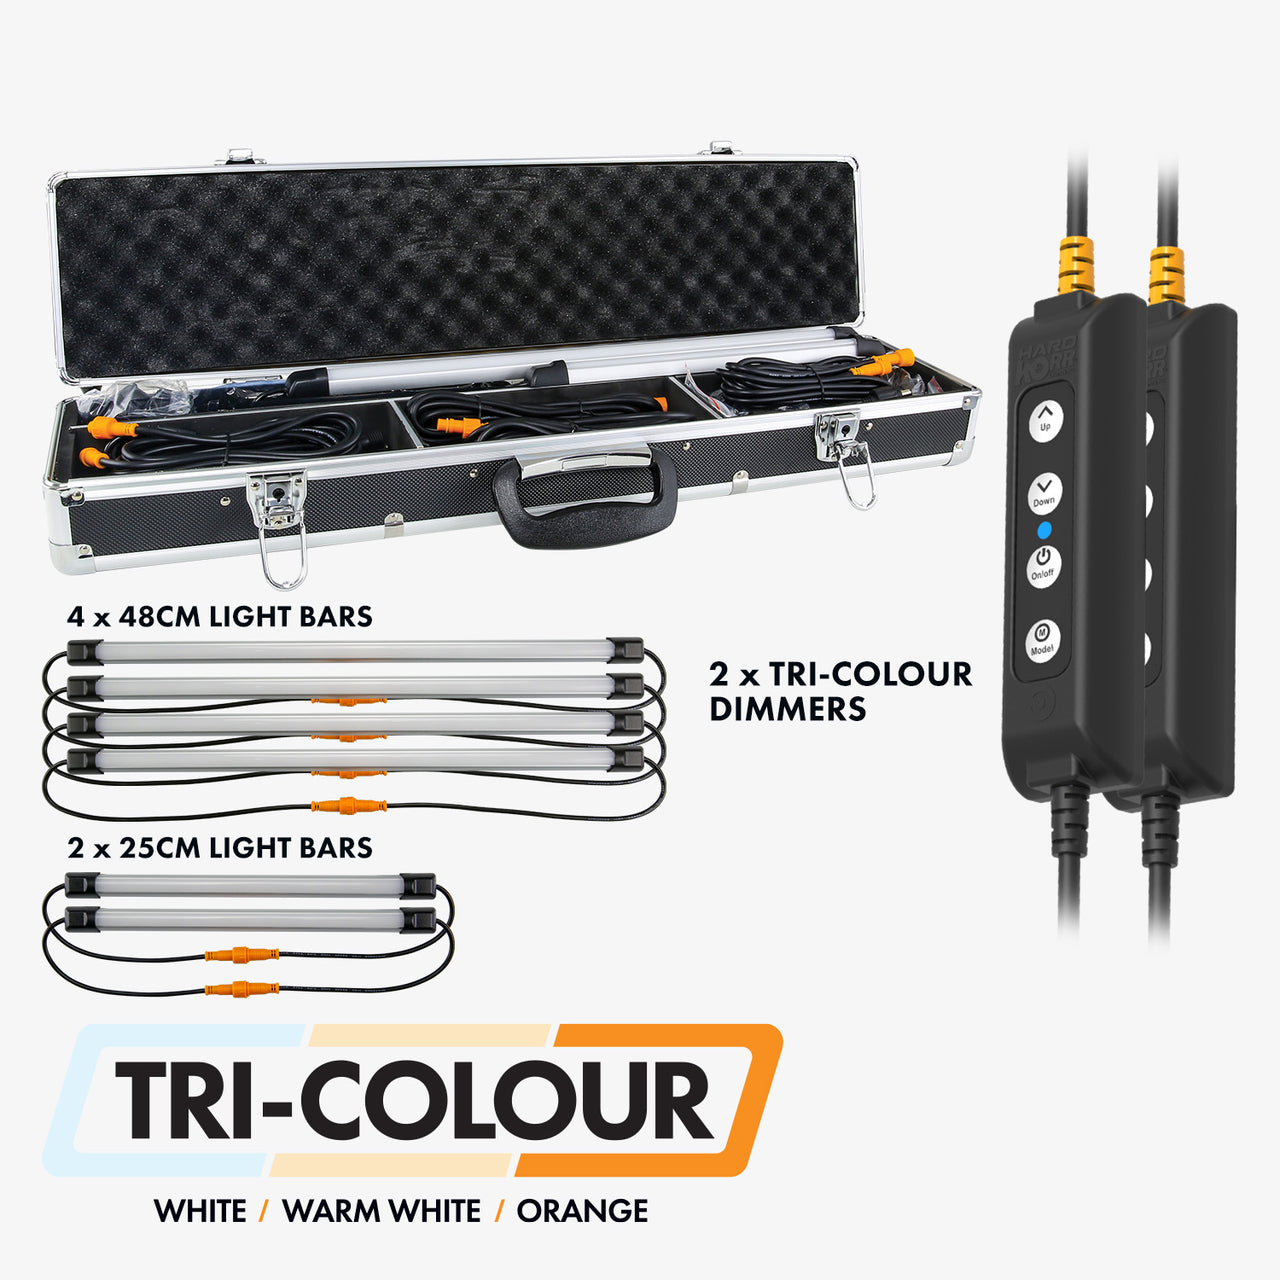 HARDKORR 6 Bar Tri-Colour LED Camp Light Kit